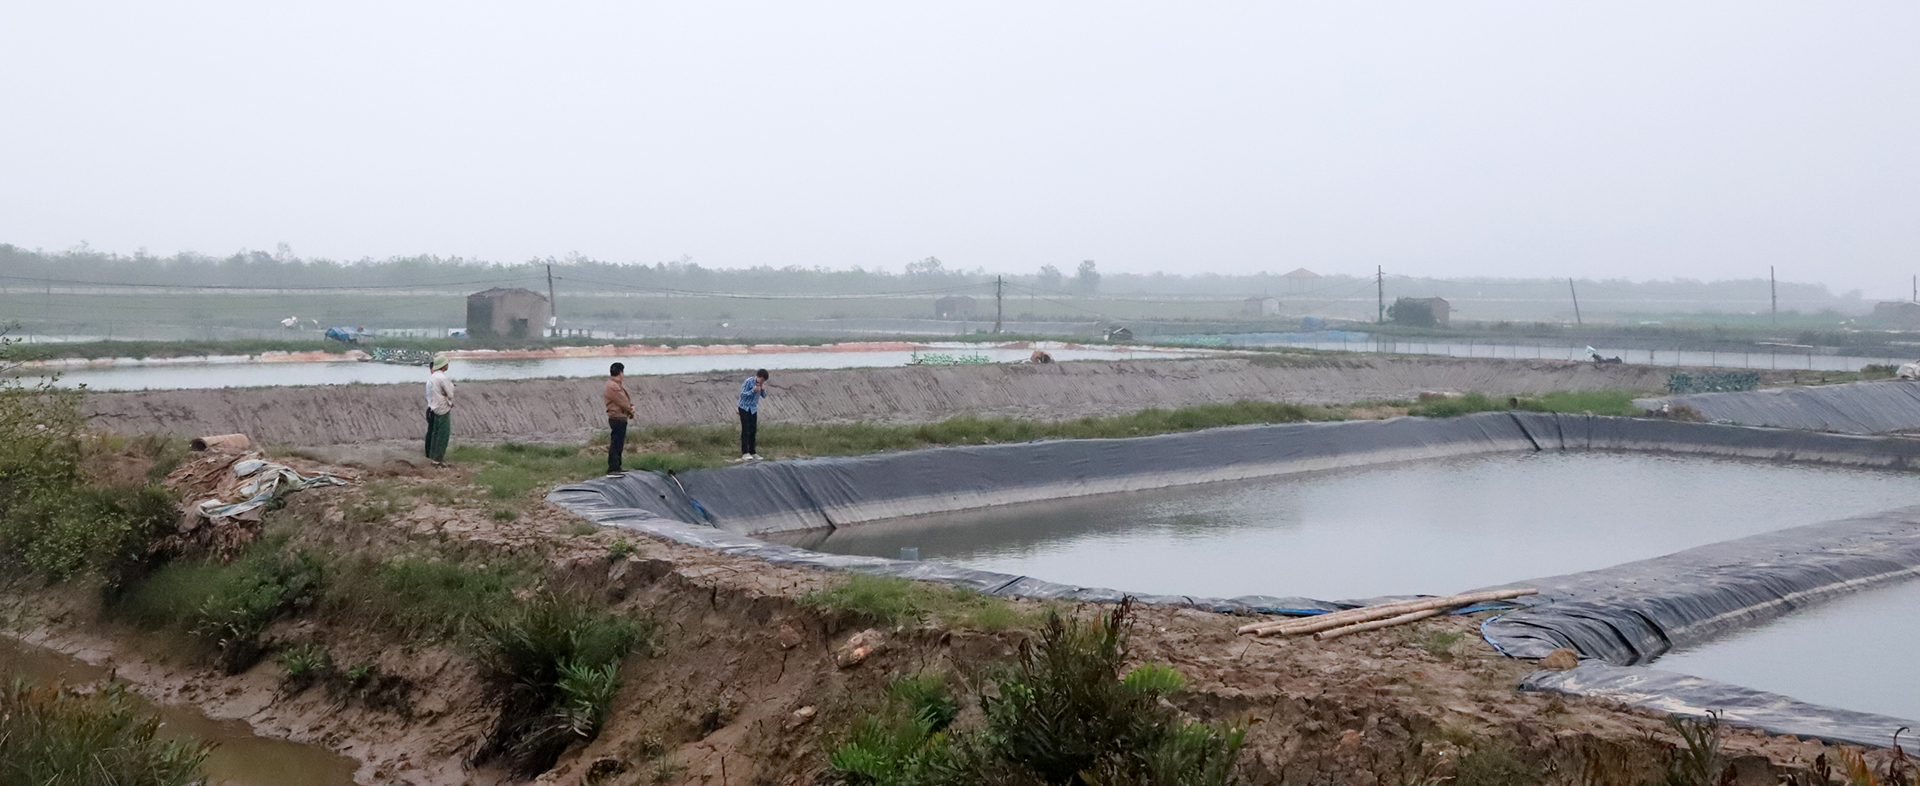 Khu vực nuôi tôm của người dân xóm Phong Yên, xã Hưng Hòa đã được quy hoạch cho dự án Khu đô thị hỗn hợp của Công ty TNHH Hà Thành. 